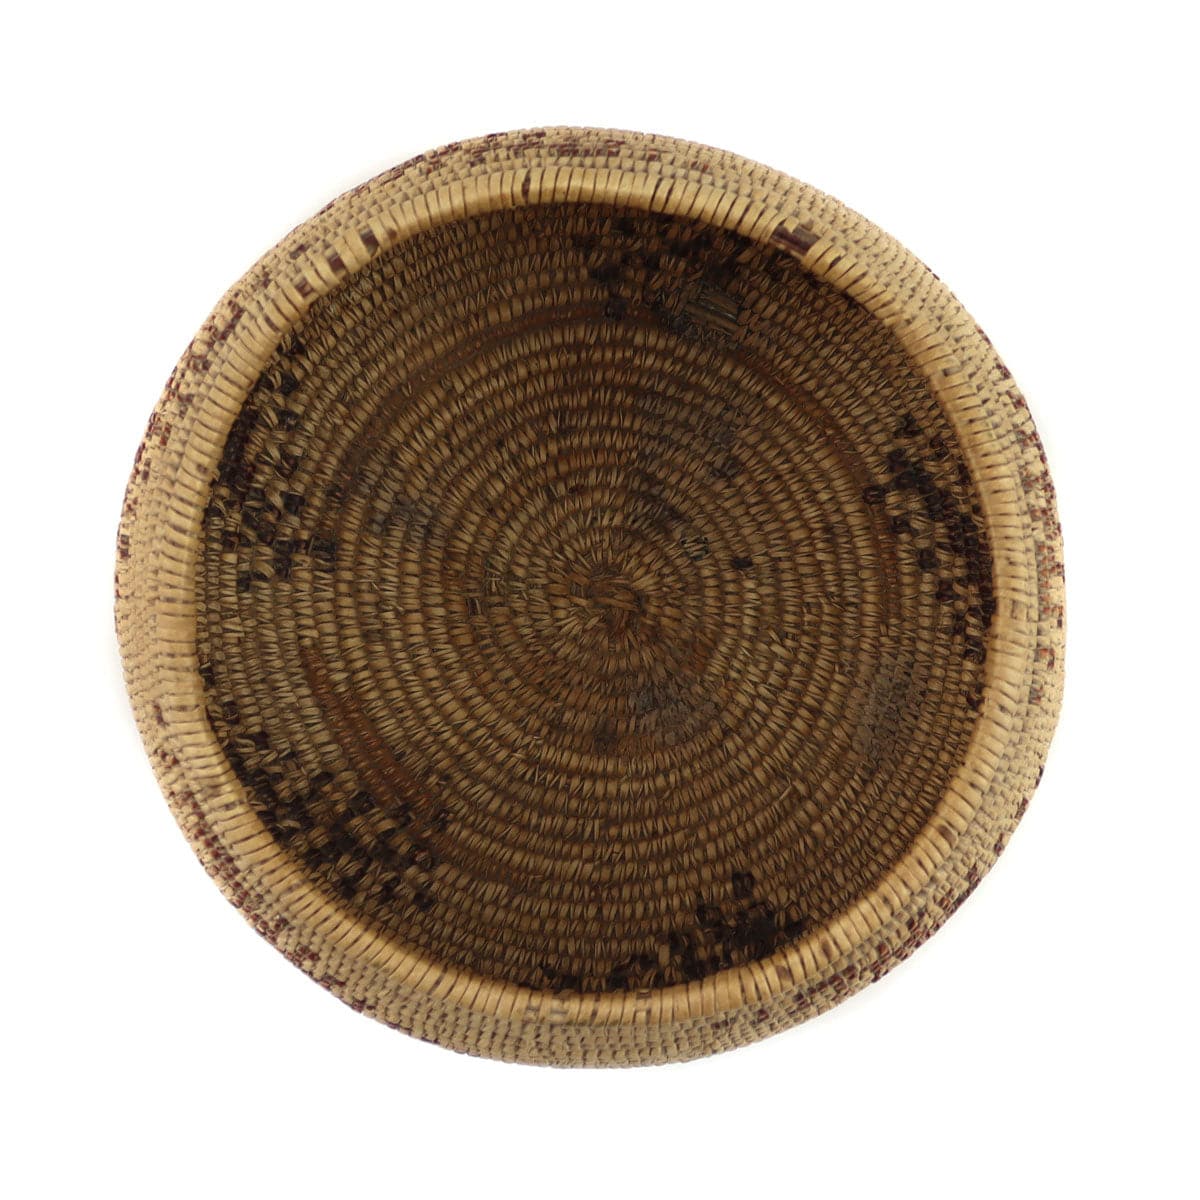 Maidu Basket c. 1900s, 3" x 6.25" (SK3230-019) 6